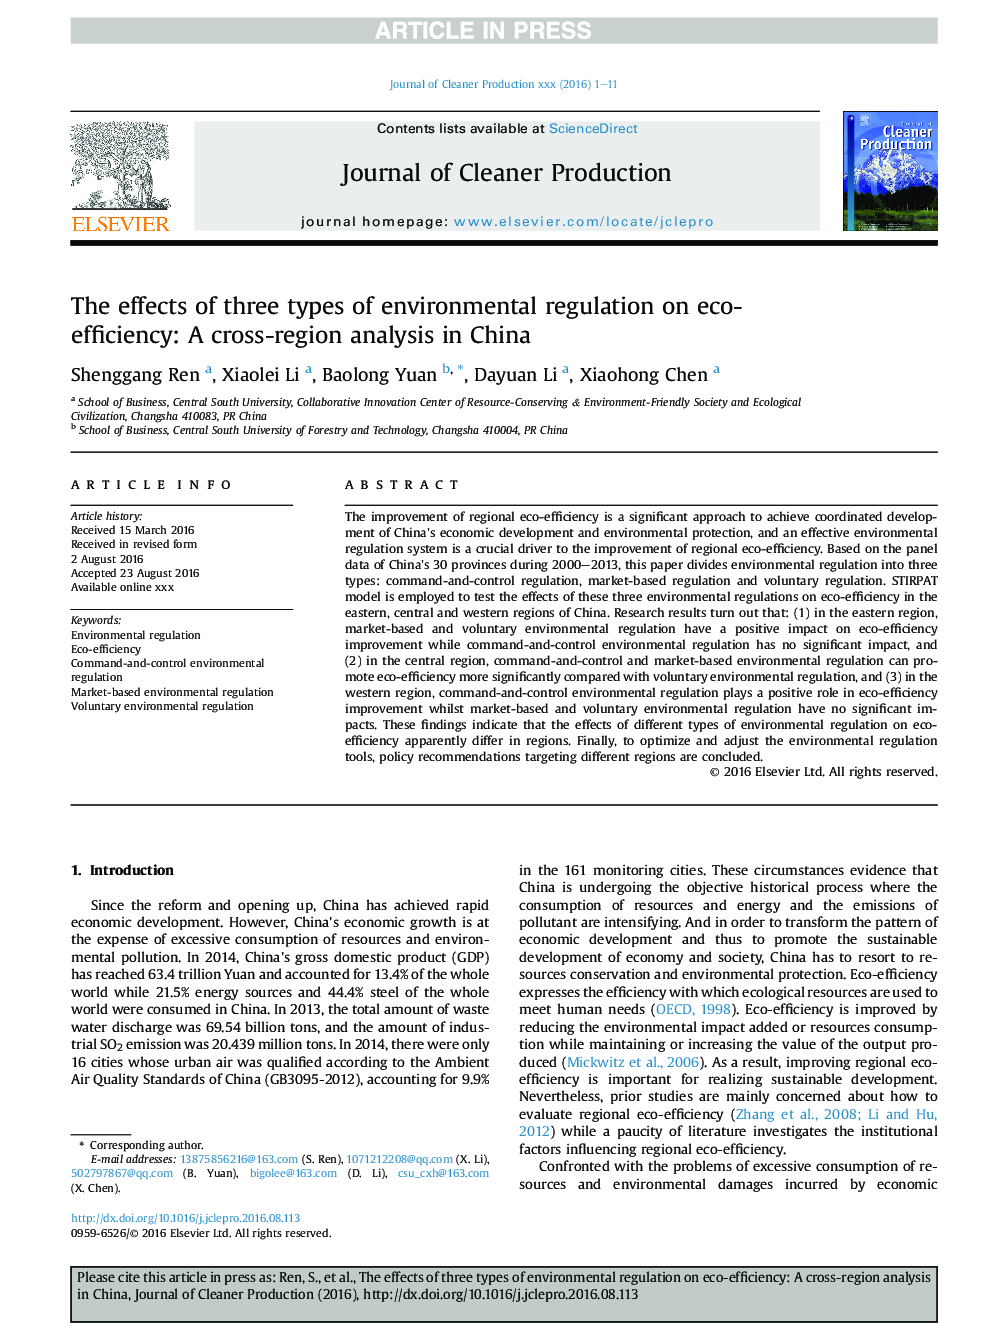 اثرات سه نوع مقررات زیست محیطی برای بهره وری زیست محیطی: تجزیه و تحلیل متقابل منطقه در چین 